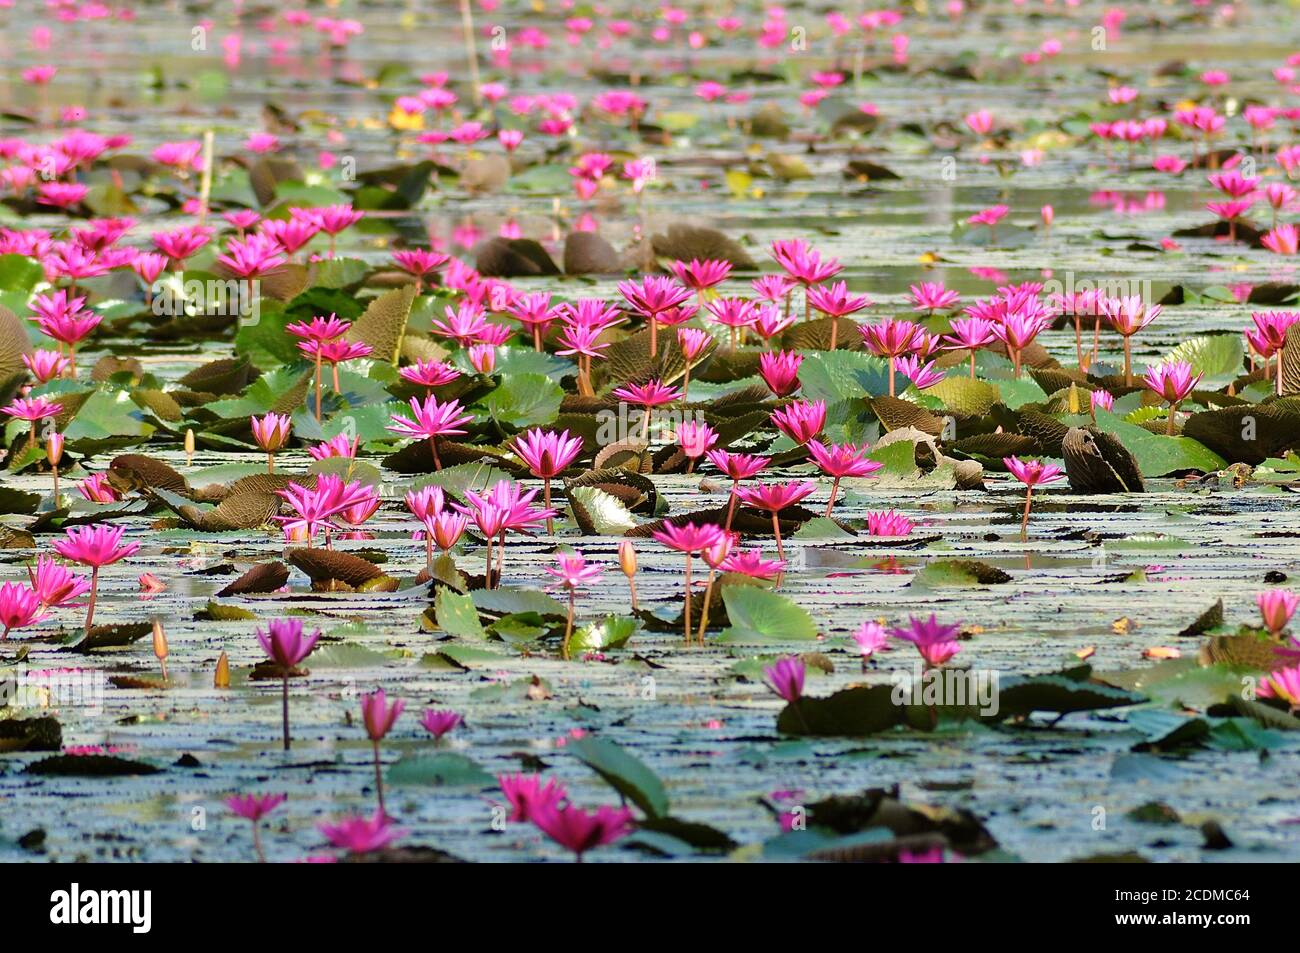 Vue en perspective avec une faible profondeur de champ d'un lac de fleurs de lotus rose en fleurs, rappelant une peinture de couleur d'eau de Monet. Banque D'Images